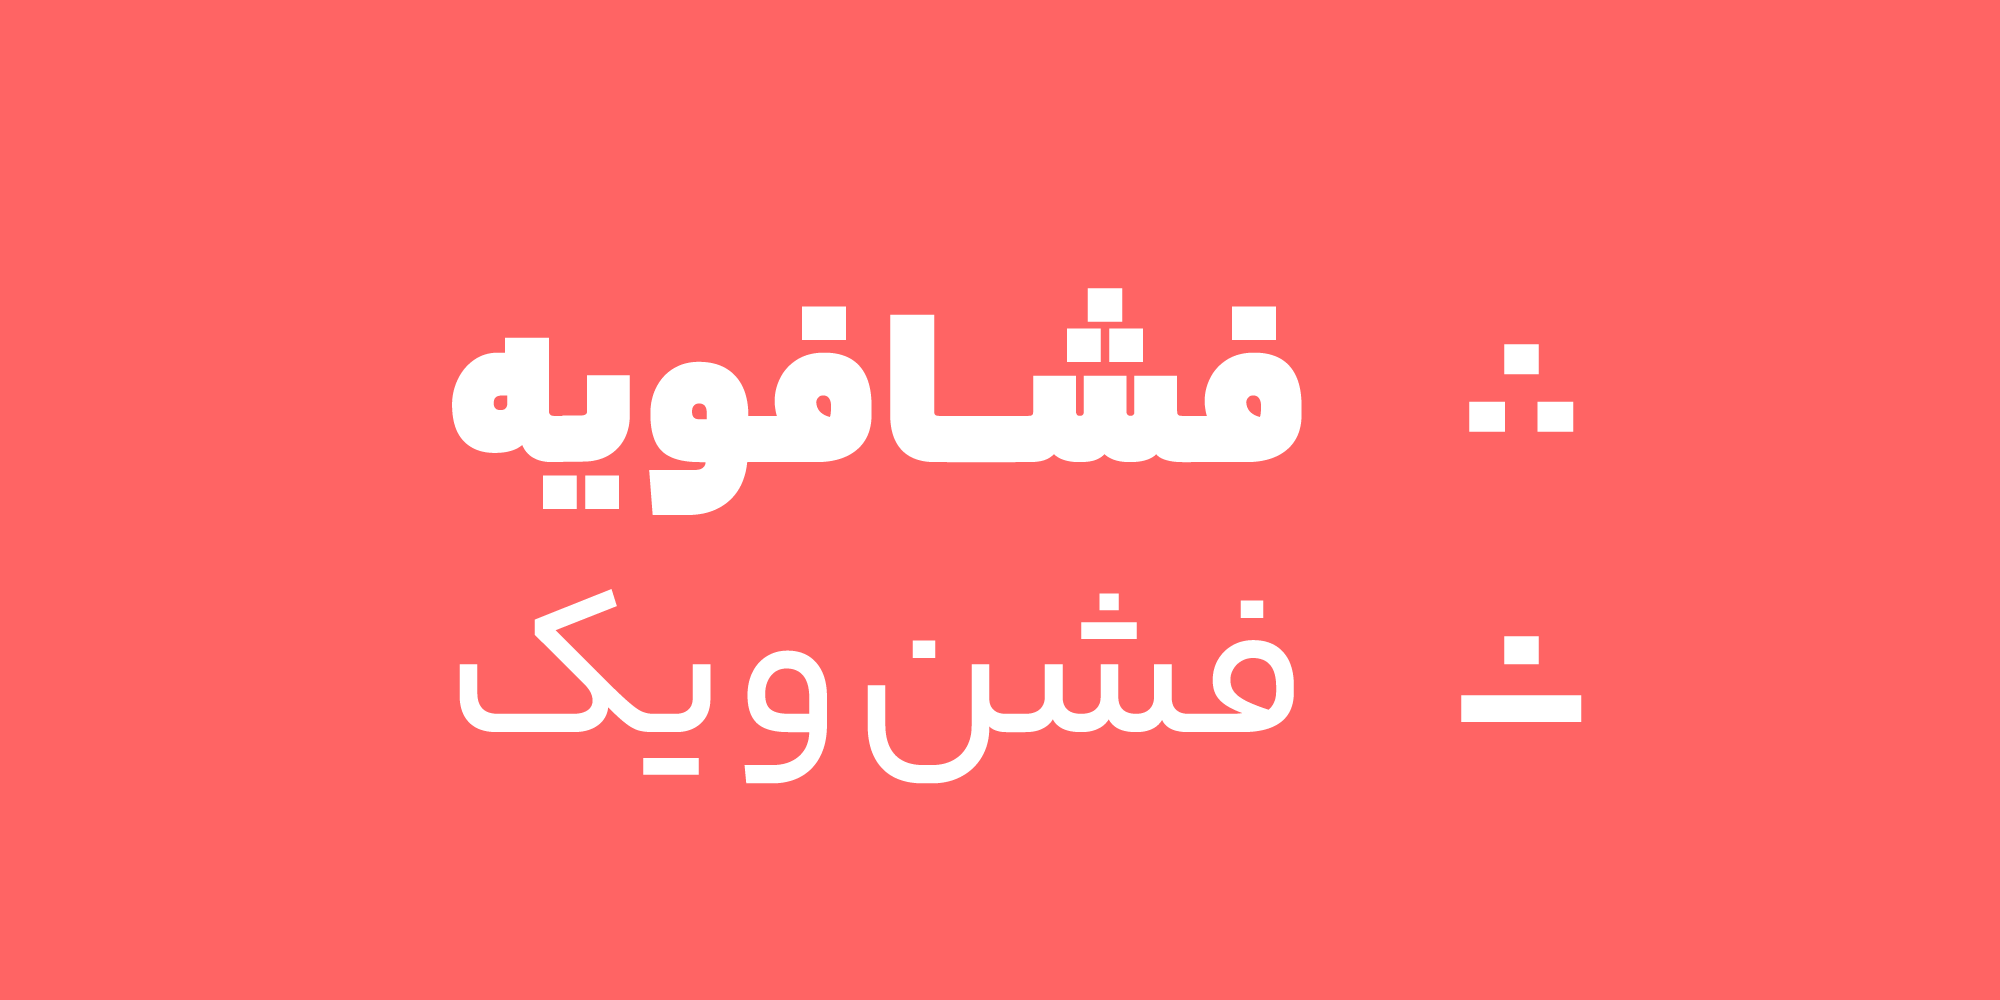 فونت یکان بخ Yekan-Bakh font